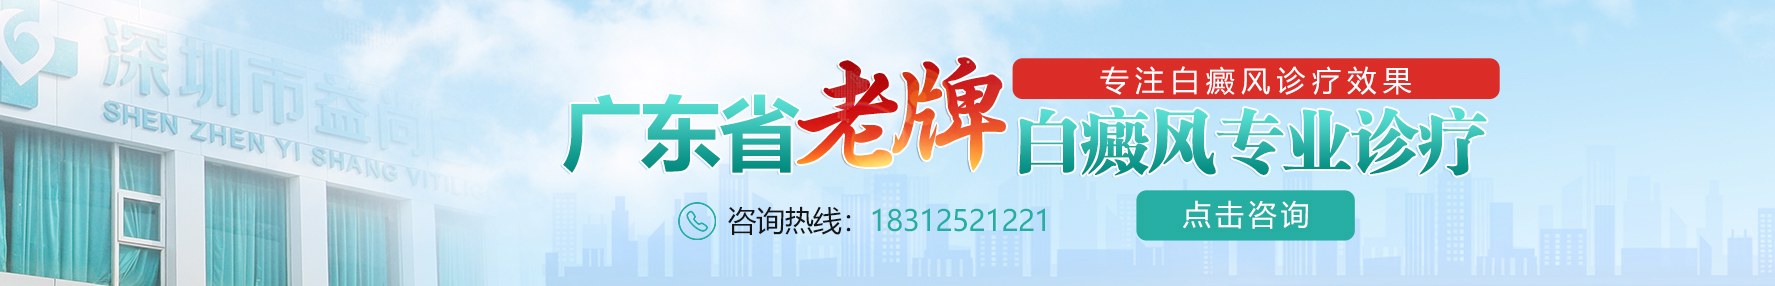 深圳白癜风医院